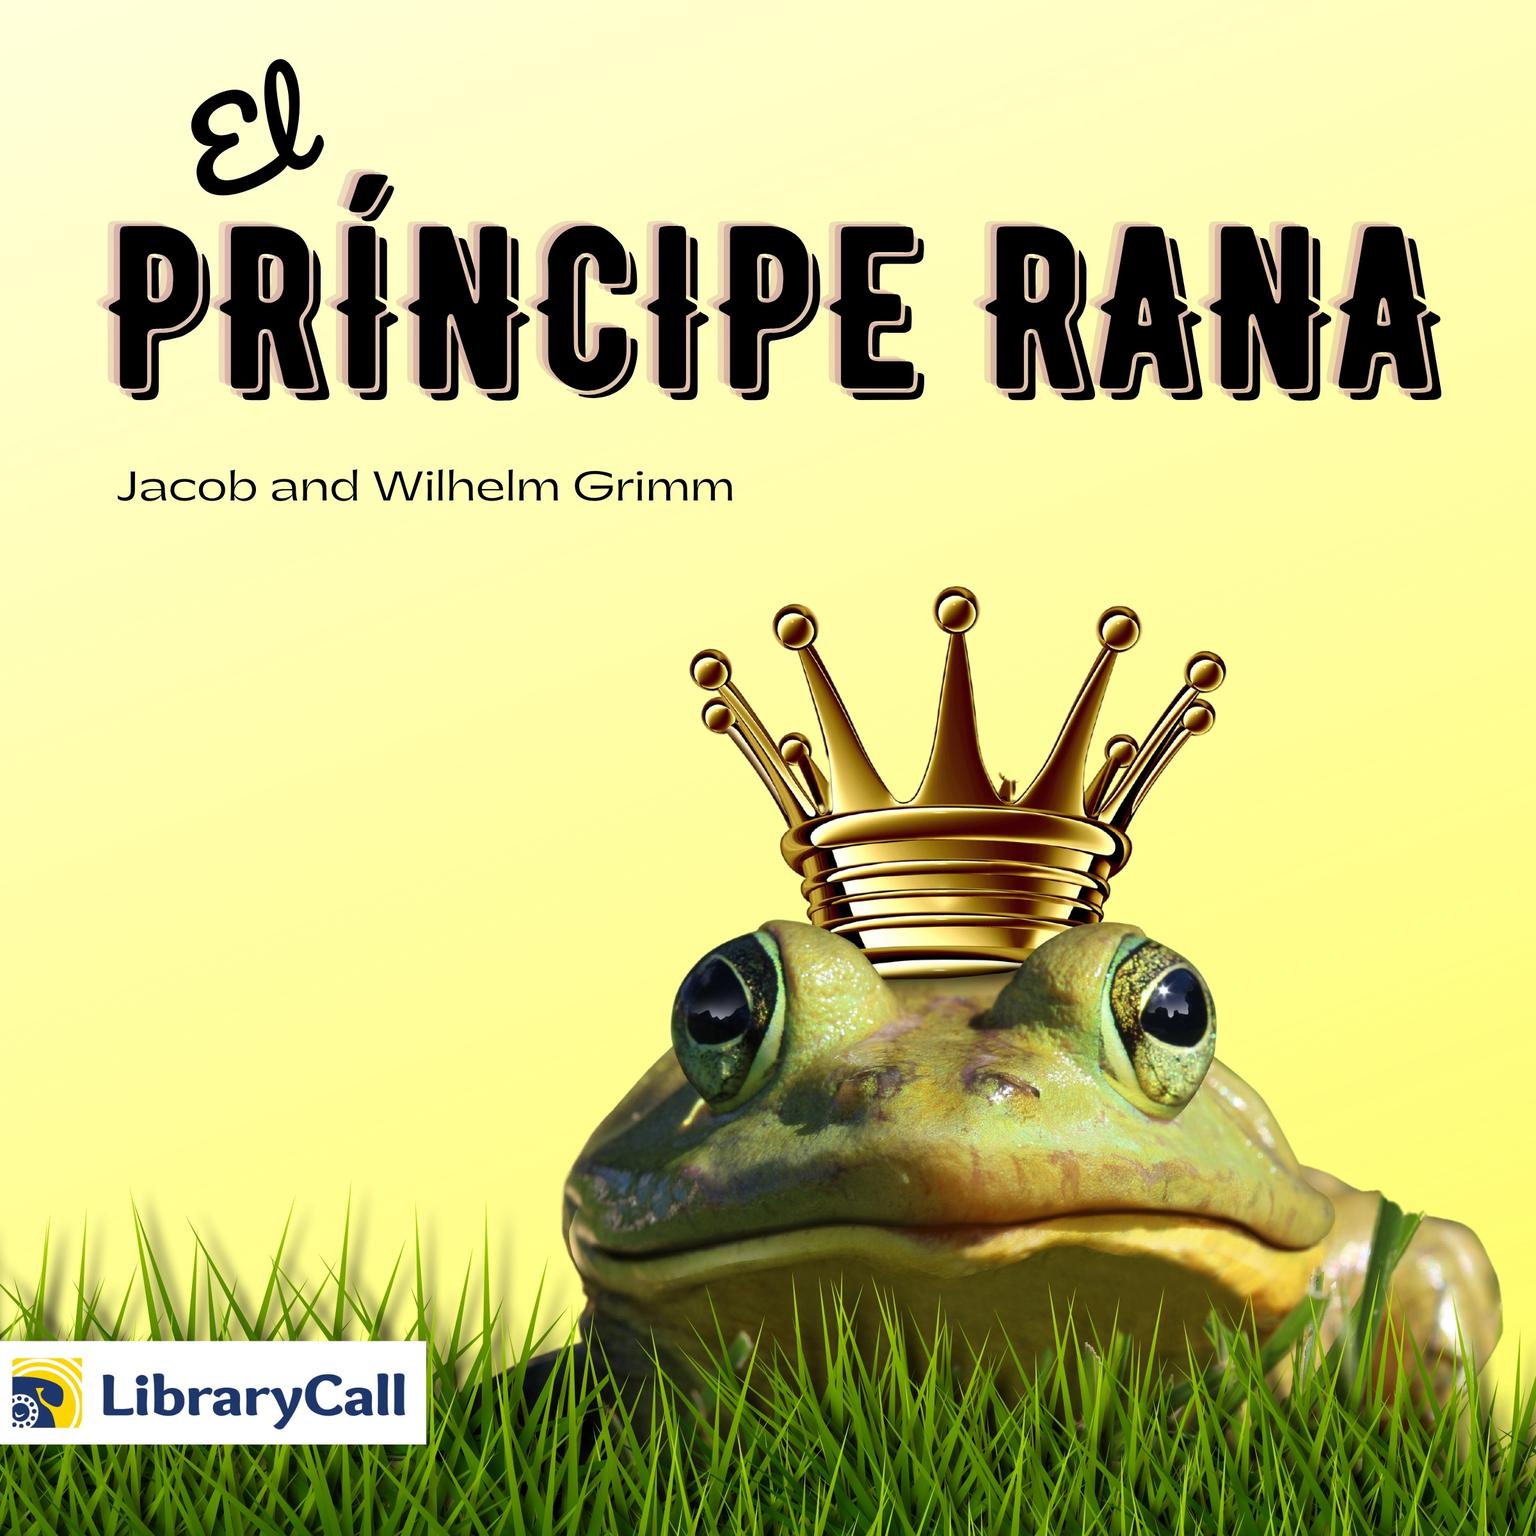 El príncipe rana Audiobook, by The Brothers Grimm